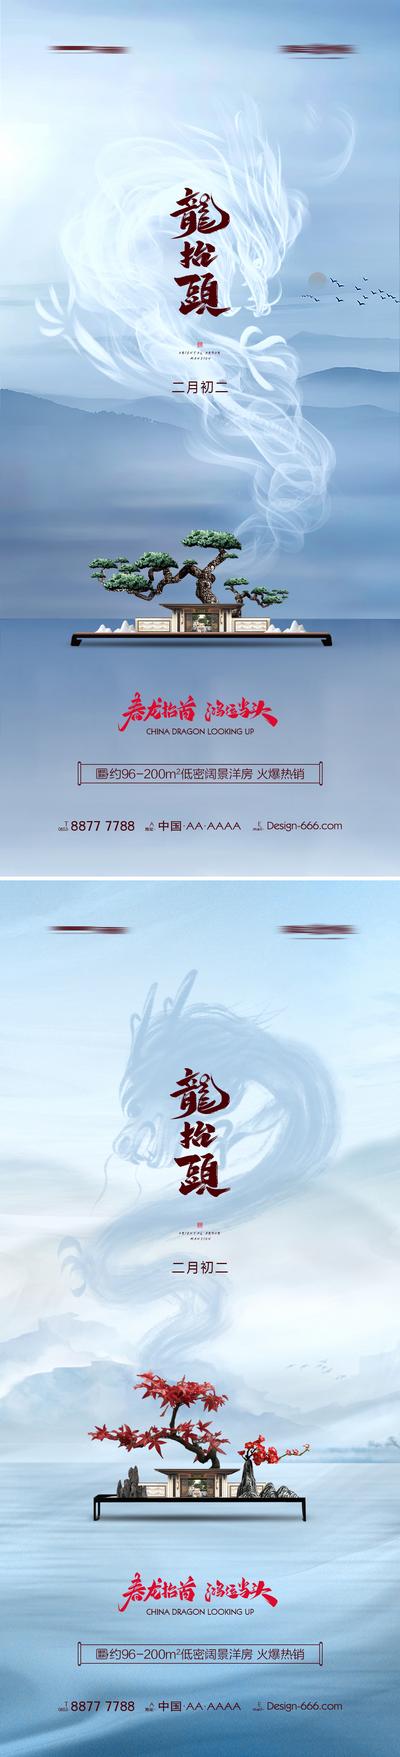 南门网 海报 地产 中国传统节日 二月二 龙抬头 新中式 湖景  